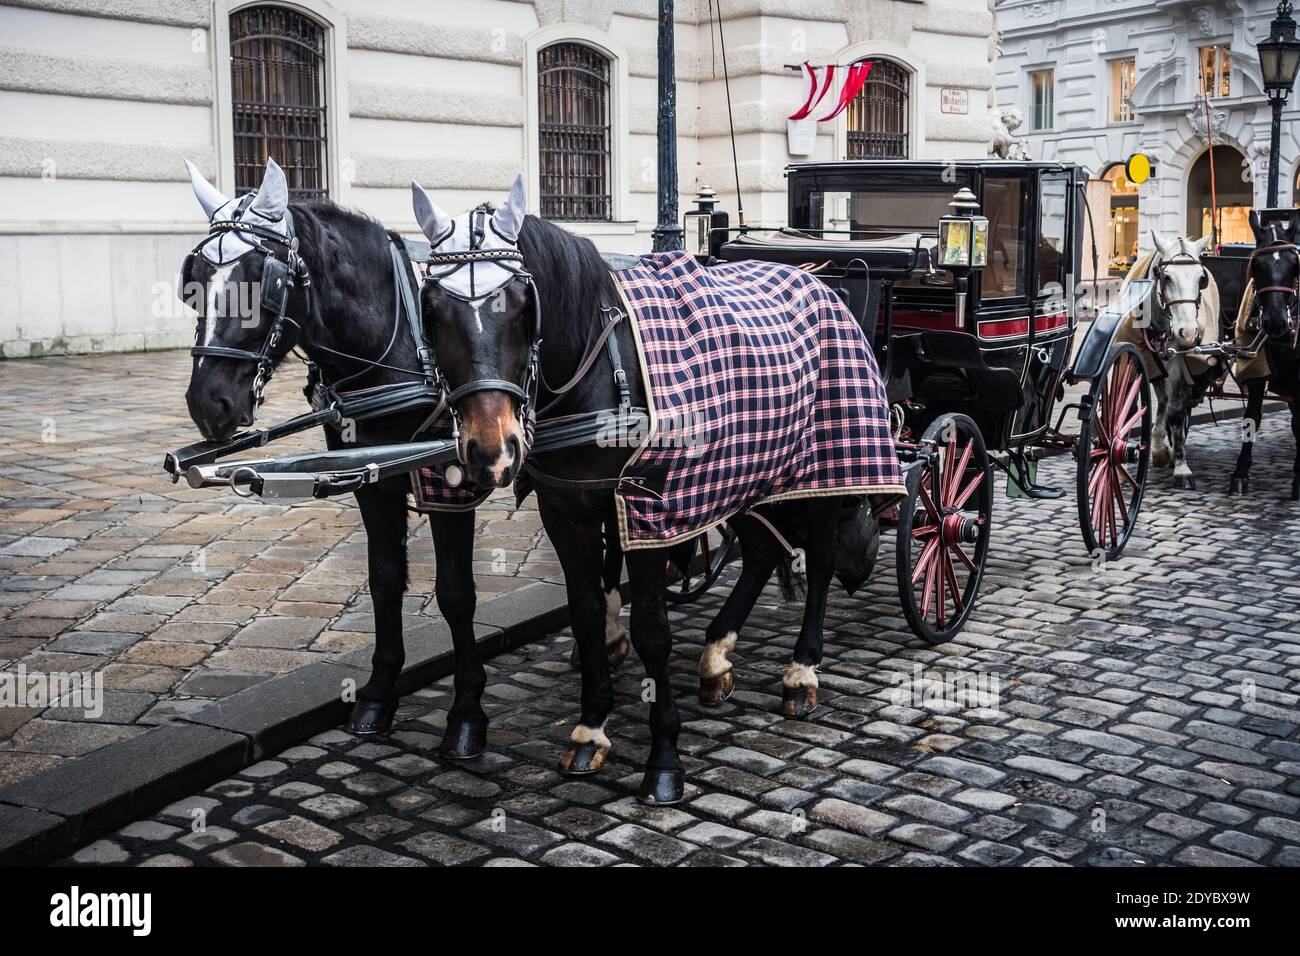 Fiaker Hackney Carriage sur la place Saint Michael à Vienne, Autriche, lors d'une froide journée d'hiver Banque D'Images